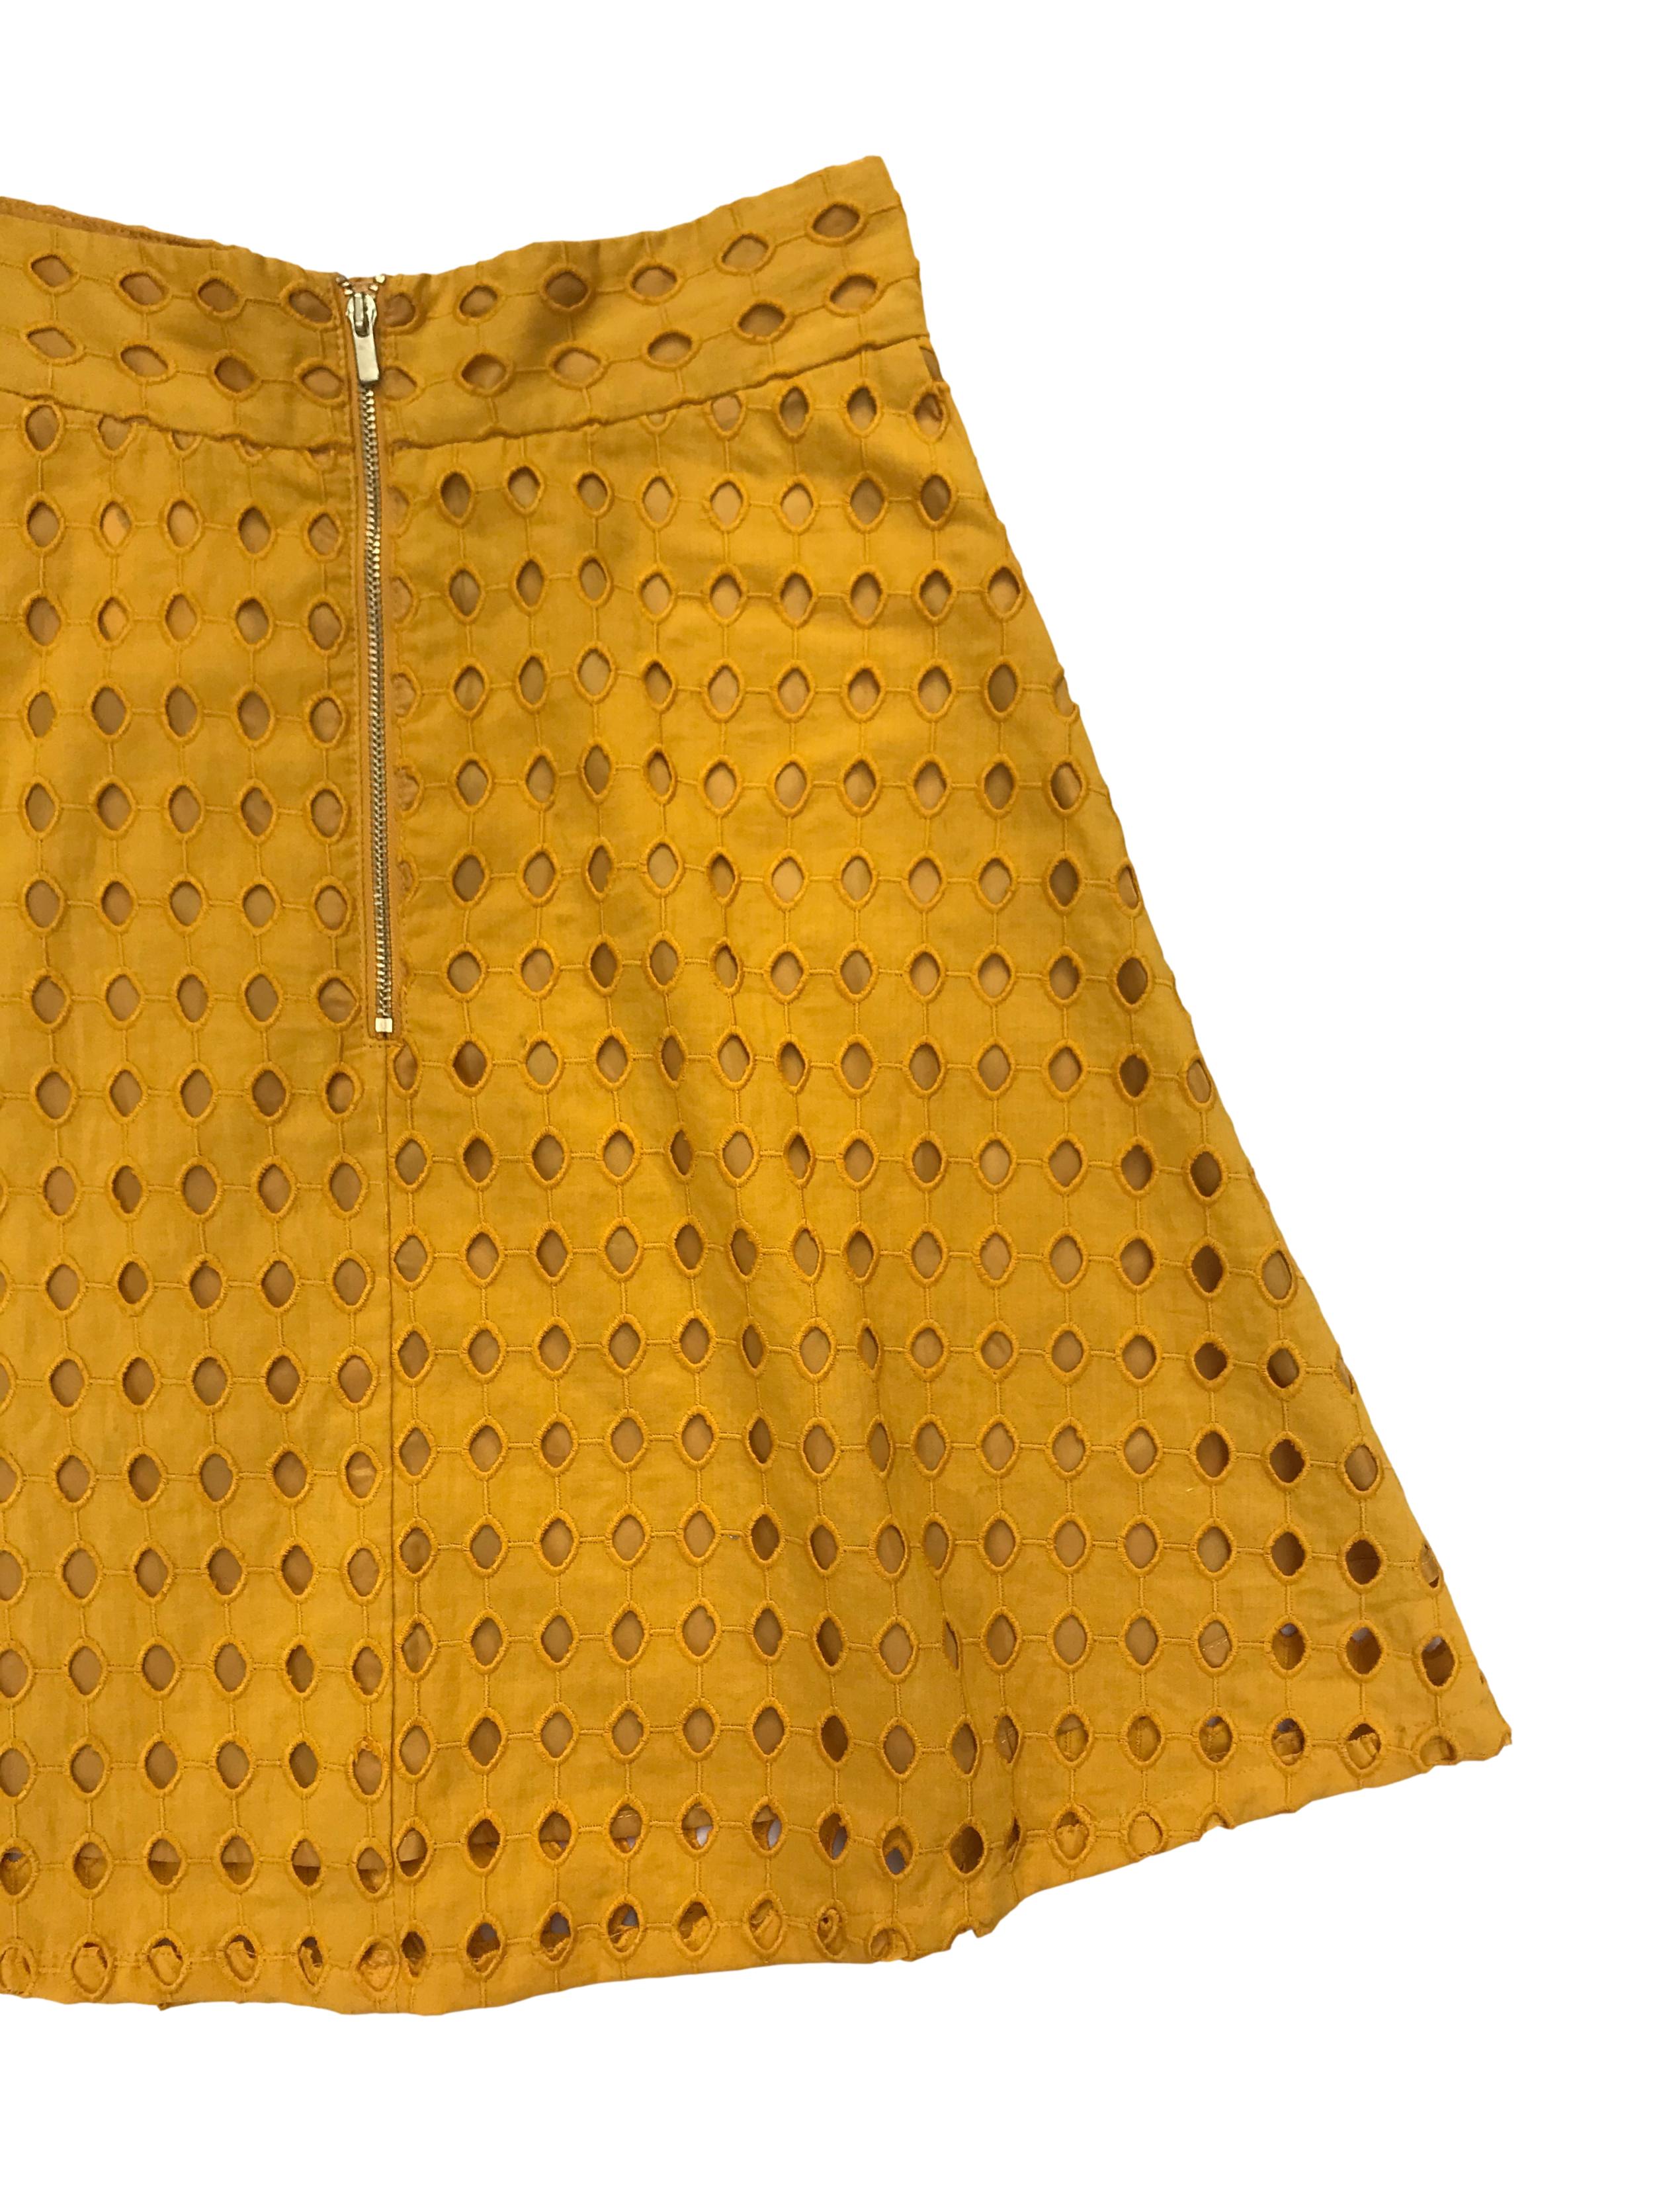 Falda H&M 100% algodón mostaza con patrón calado, corte semicampana, con forro, cierre y botón posterior. Cintura 66cm Largo 50cm. Precio original S/ 129